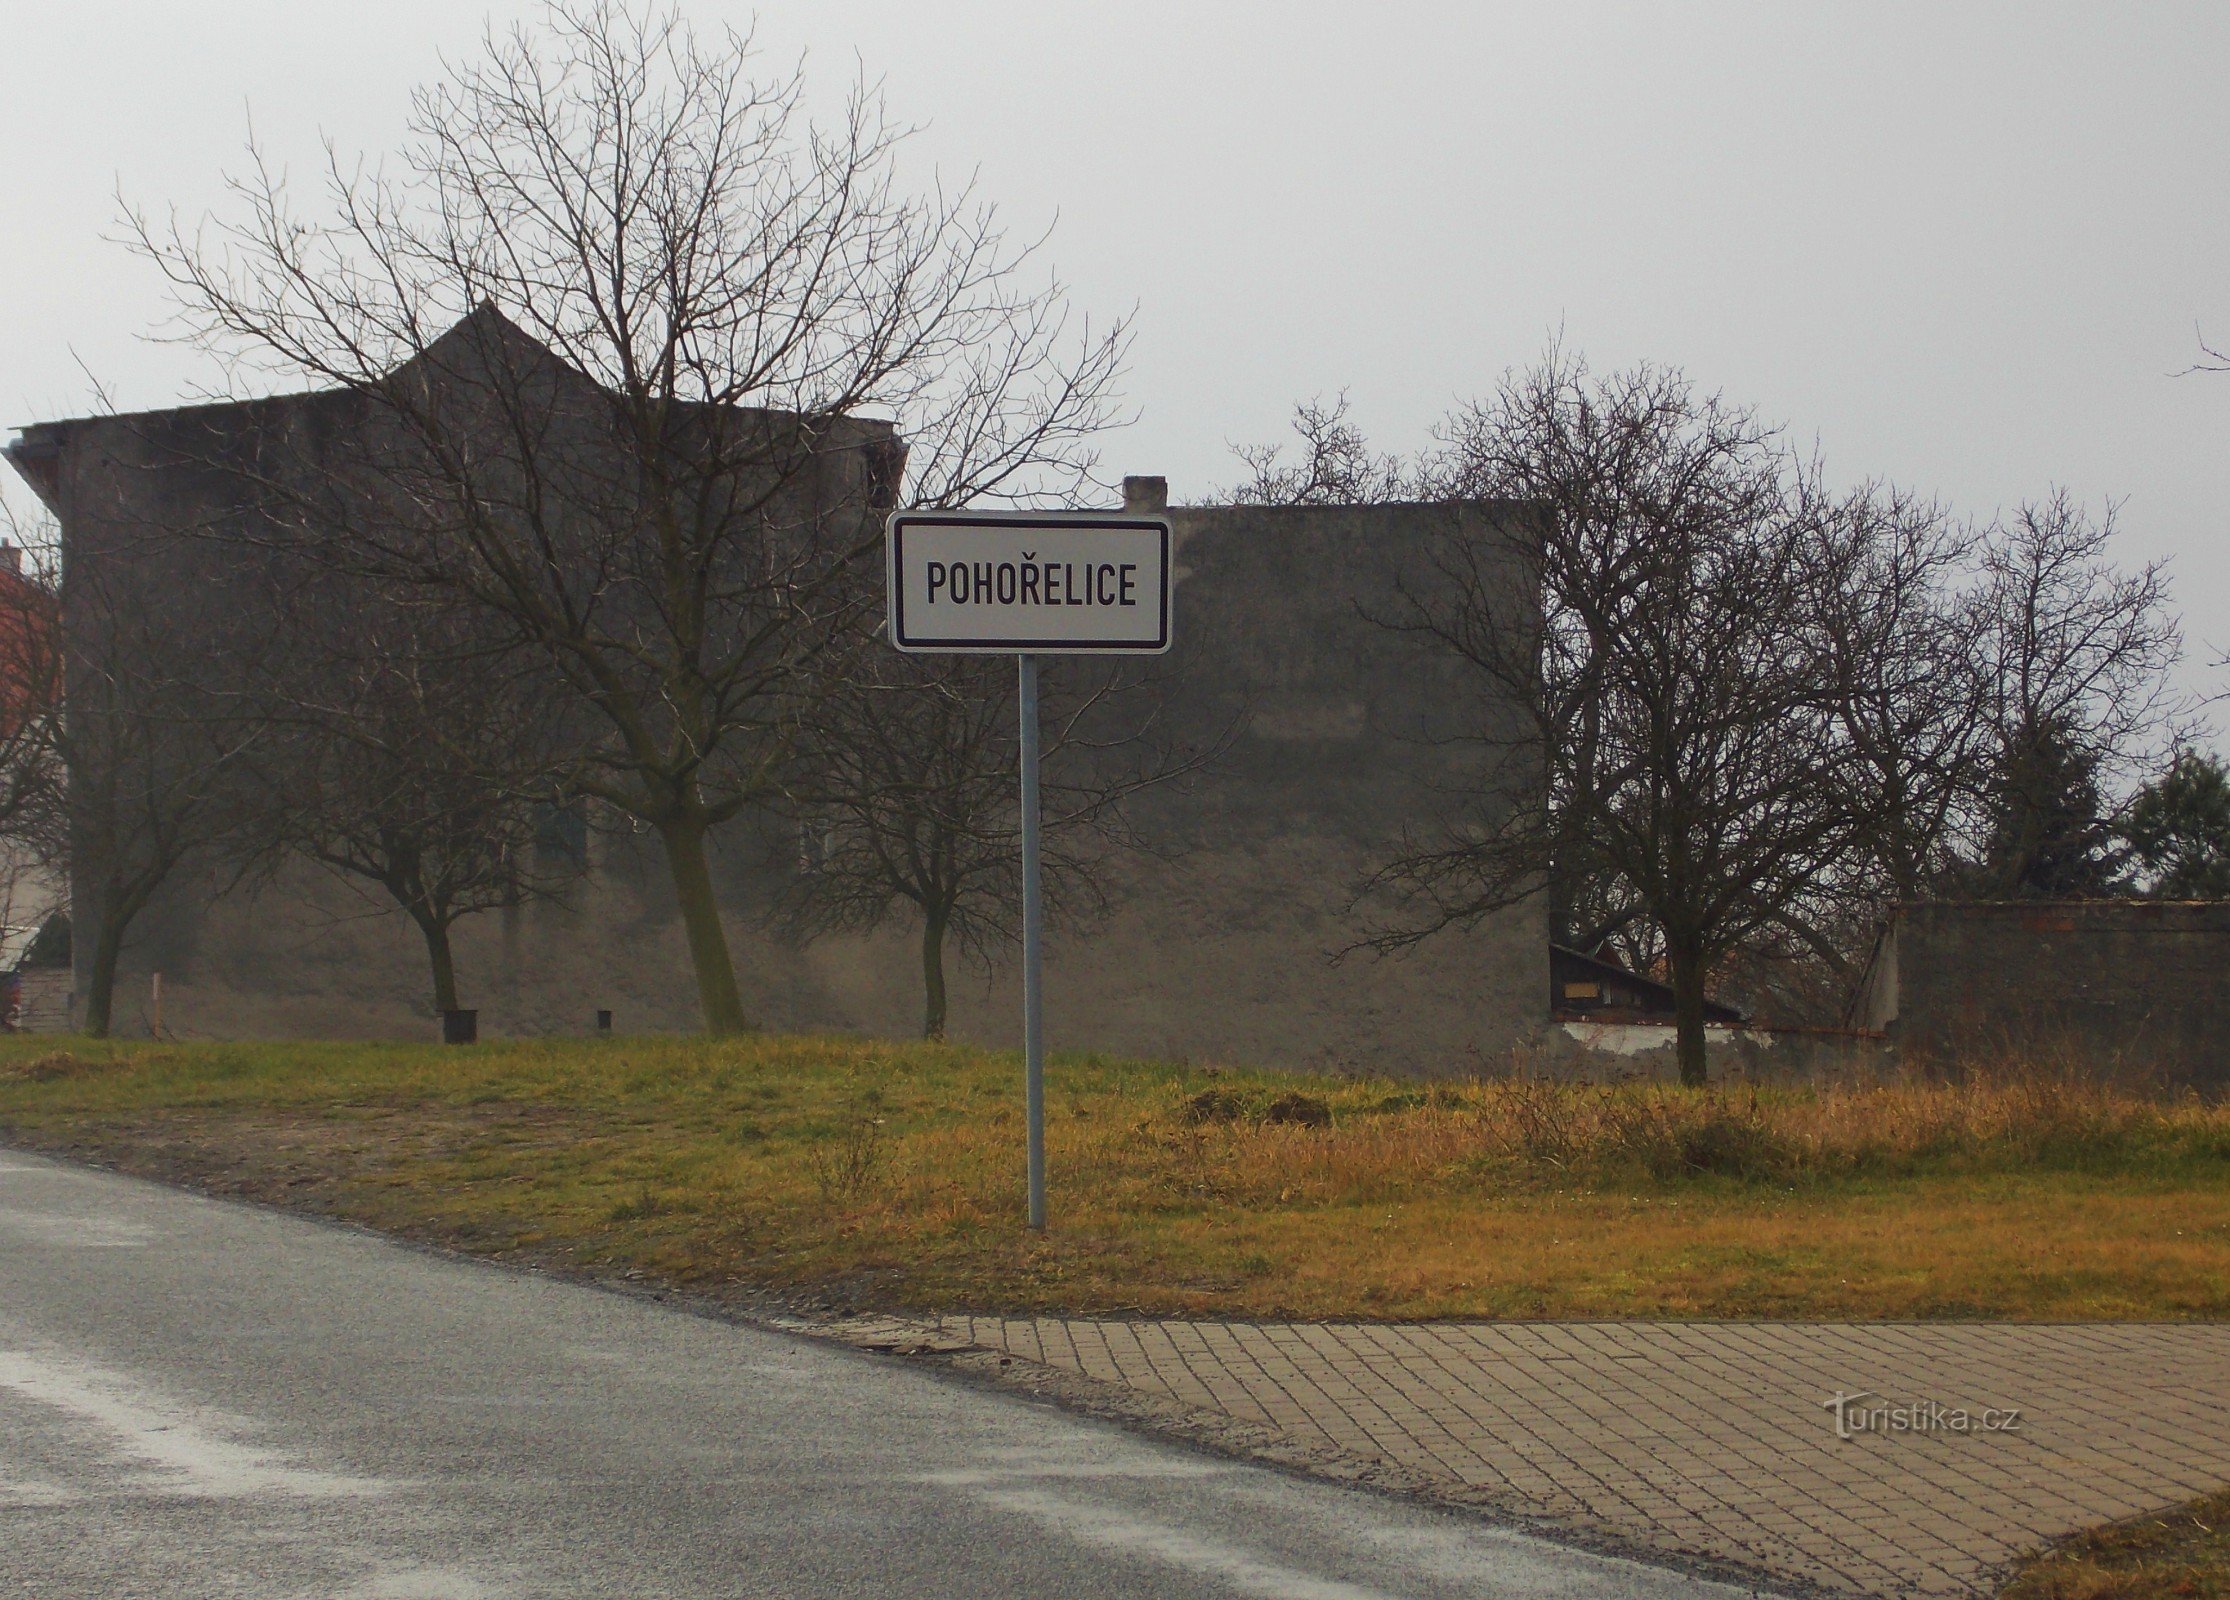 Pohořelice municipality